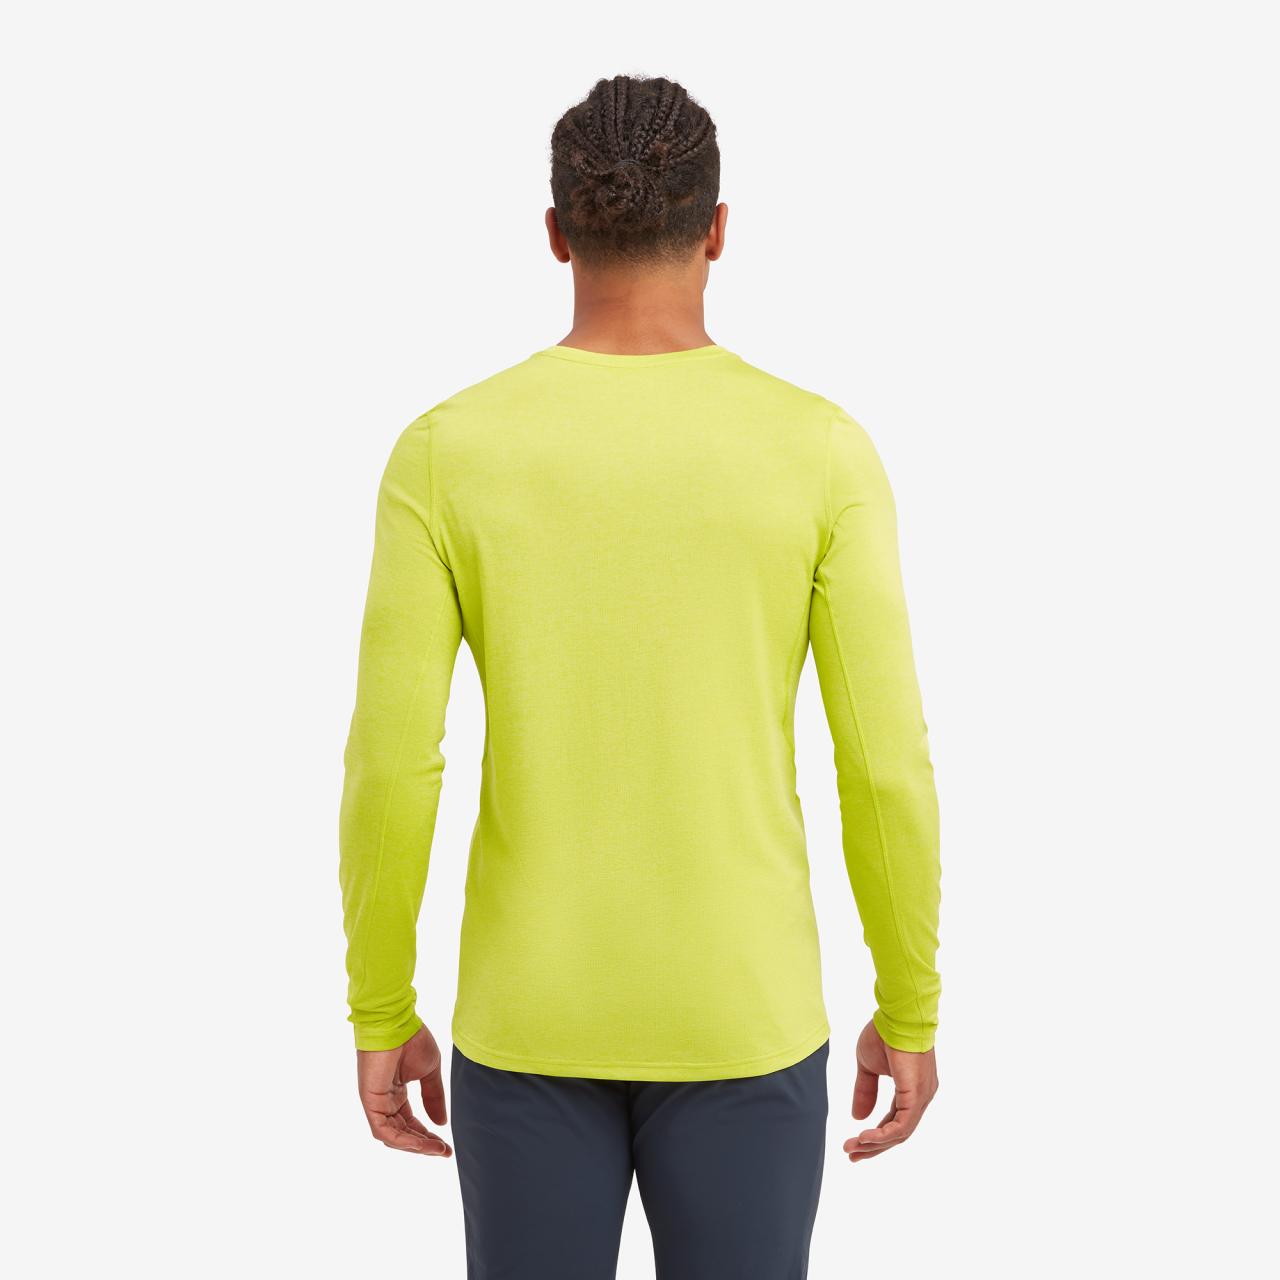 DART LONG SLEEVE T-SHIRT-CITRUS SPRING-S pánské triko dlouhý ruk. žlutozelené